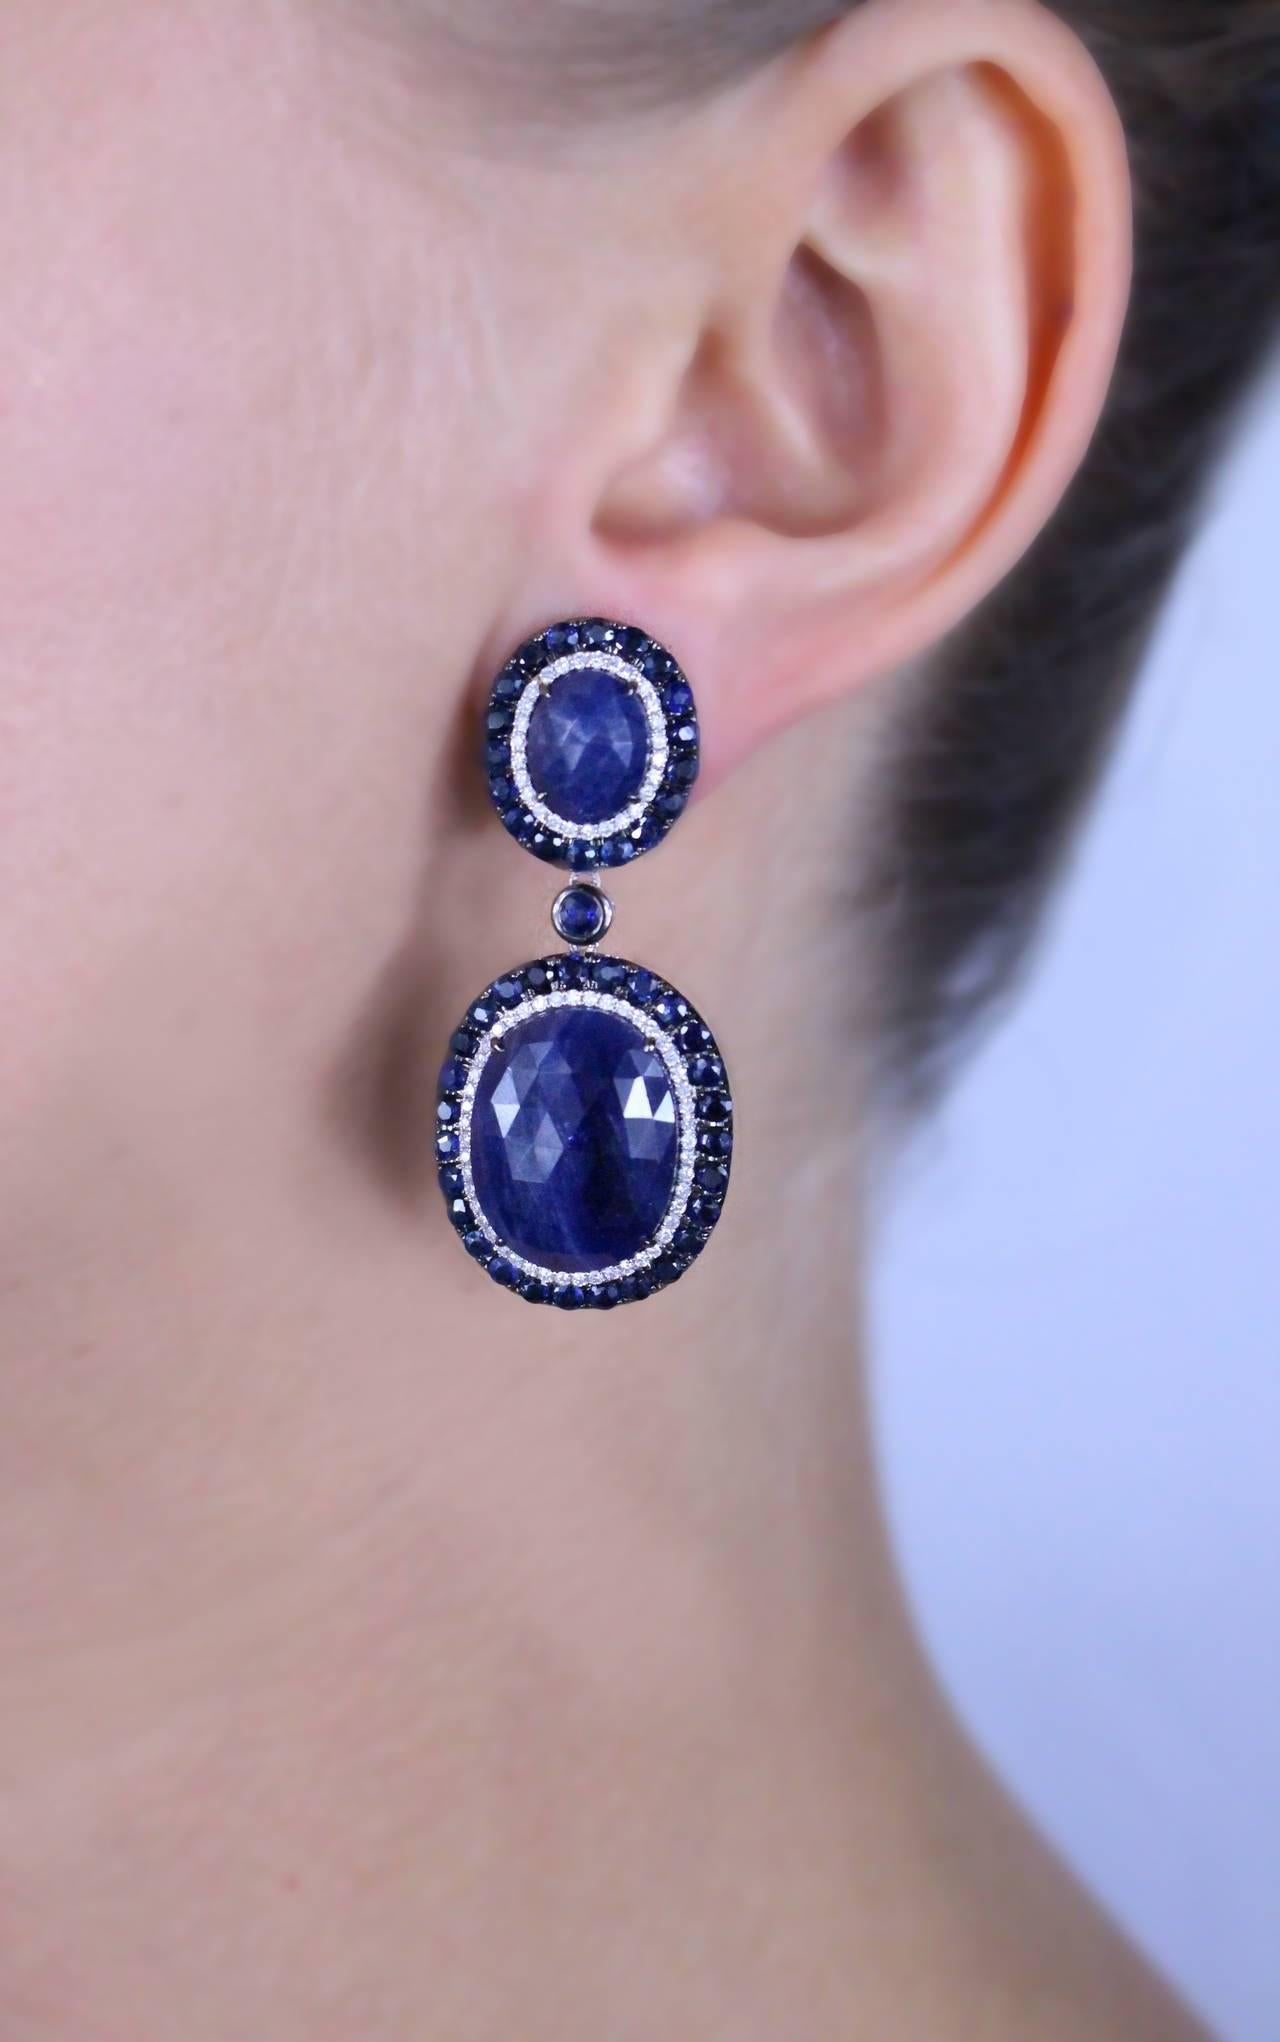 Boucles d'oreilles saphir et diamant comprenant 96 saphirs bleus taillés en mélange pour un poids total de 34,6 carats et 150 diamants taille unique pour un poids total de 0,75 carat.

Type de métal : Or blanc 18 carats 
Métal Poids : 19,8 grammes